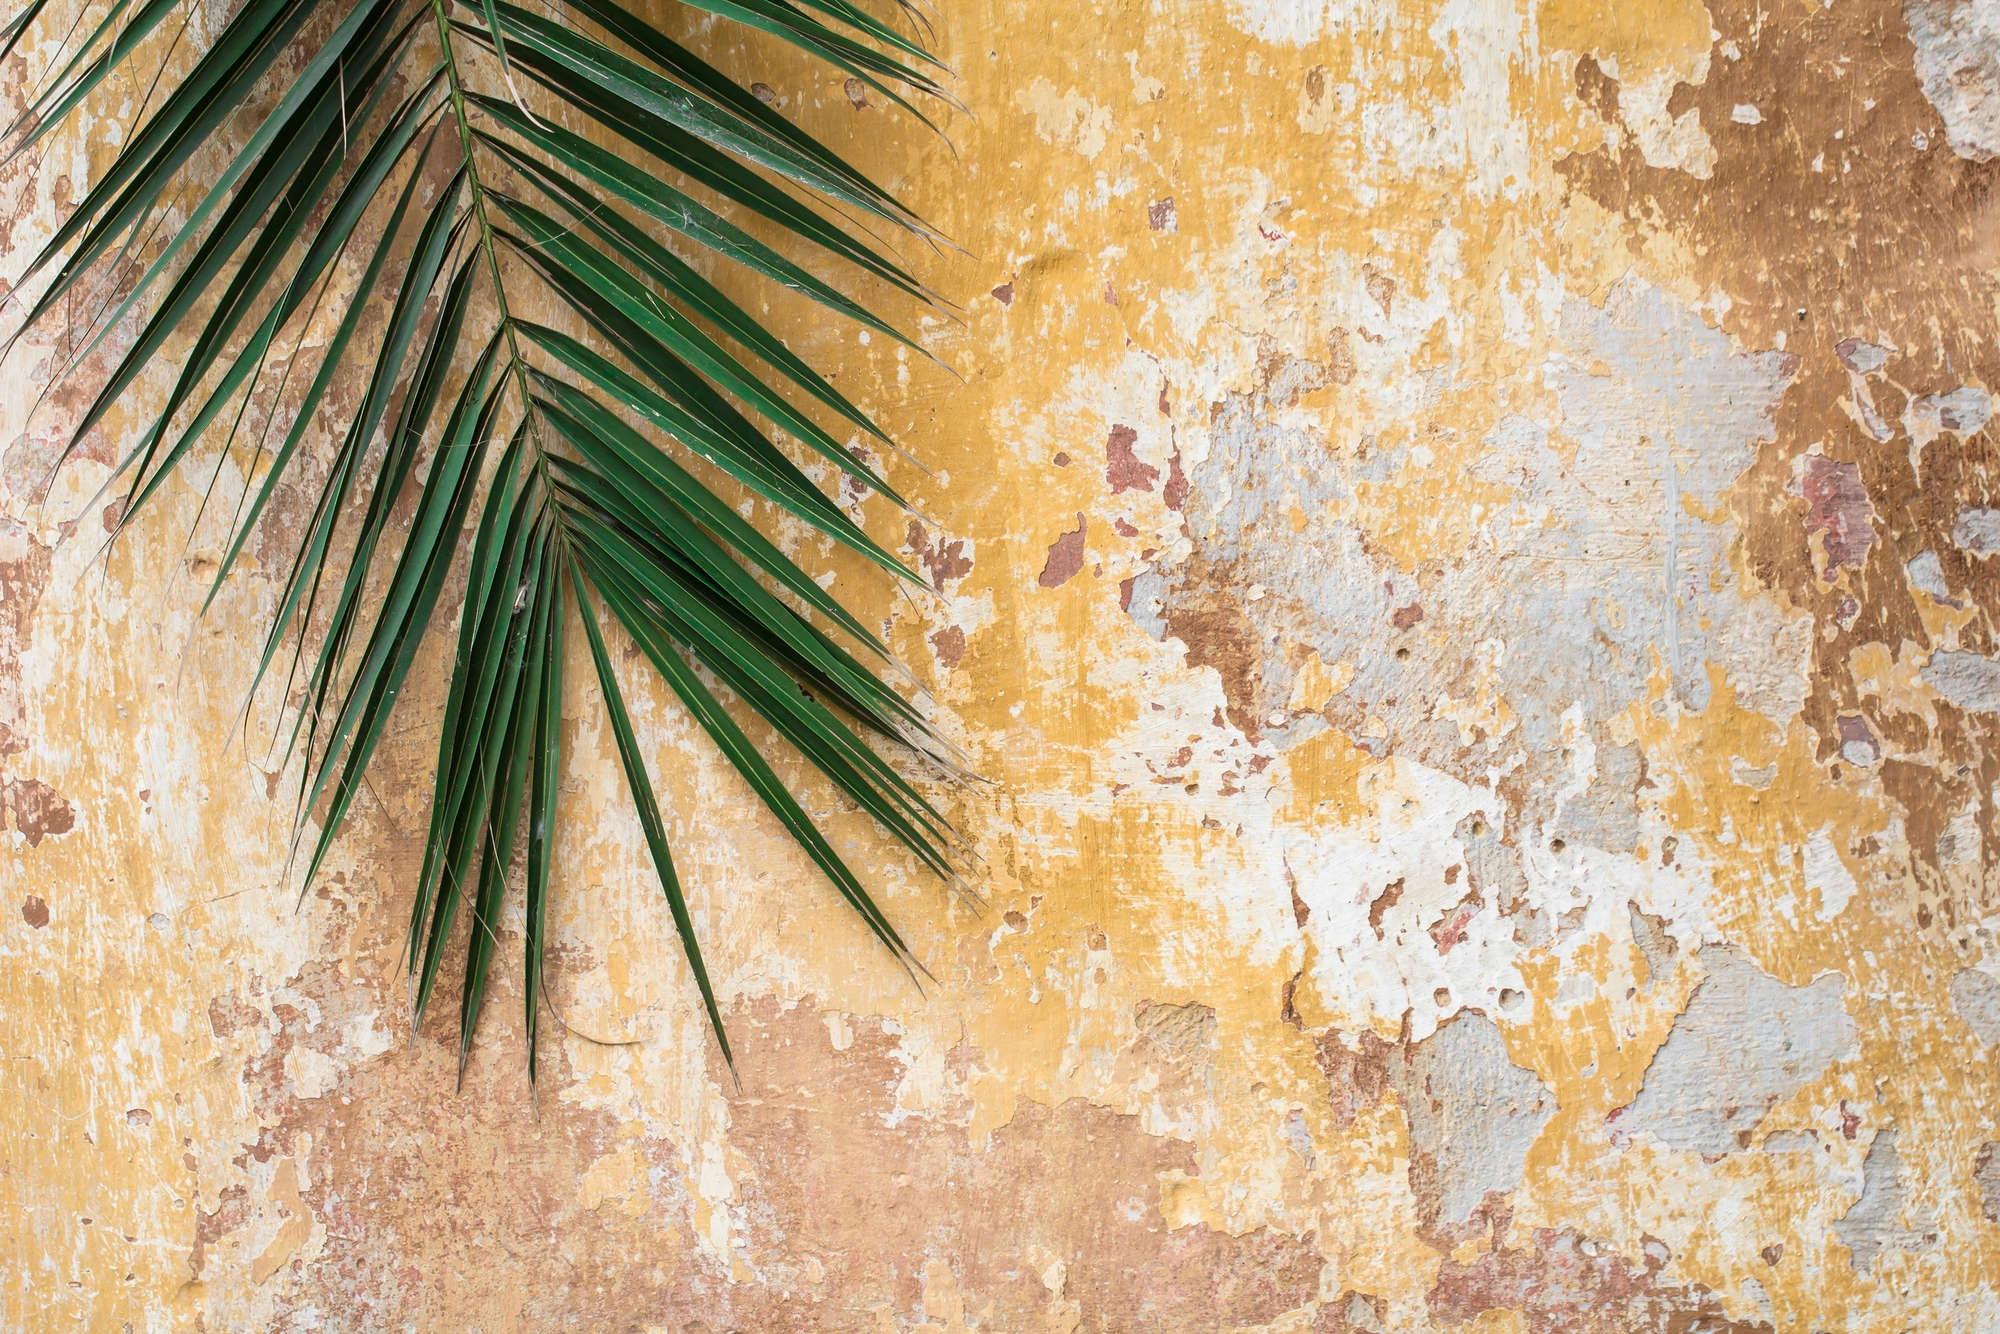             Natuur muurschildering palmblad voor stenen muur op parelmoer glad vlies
        